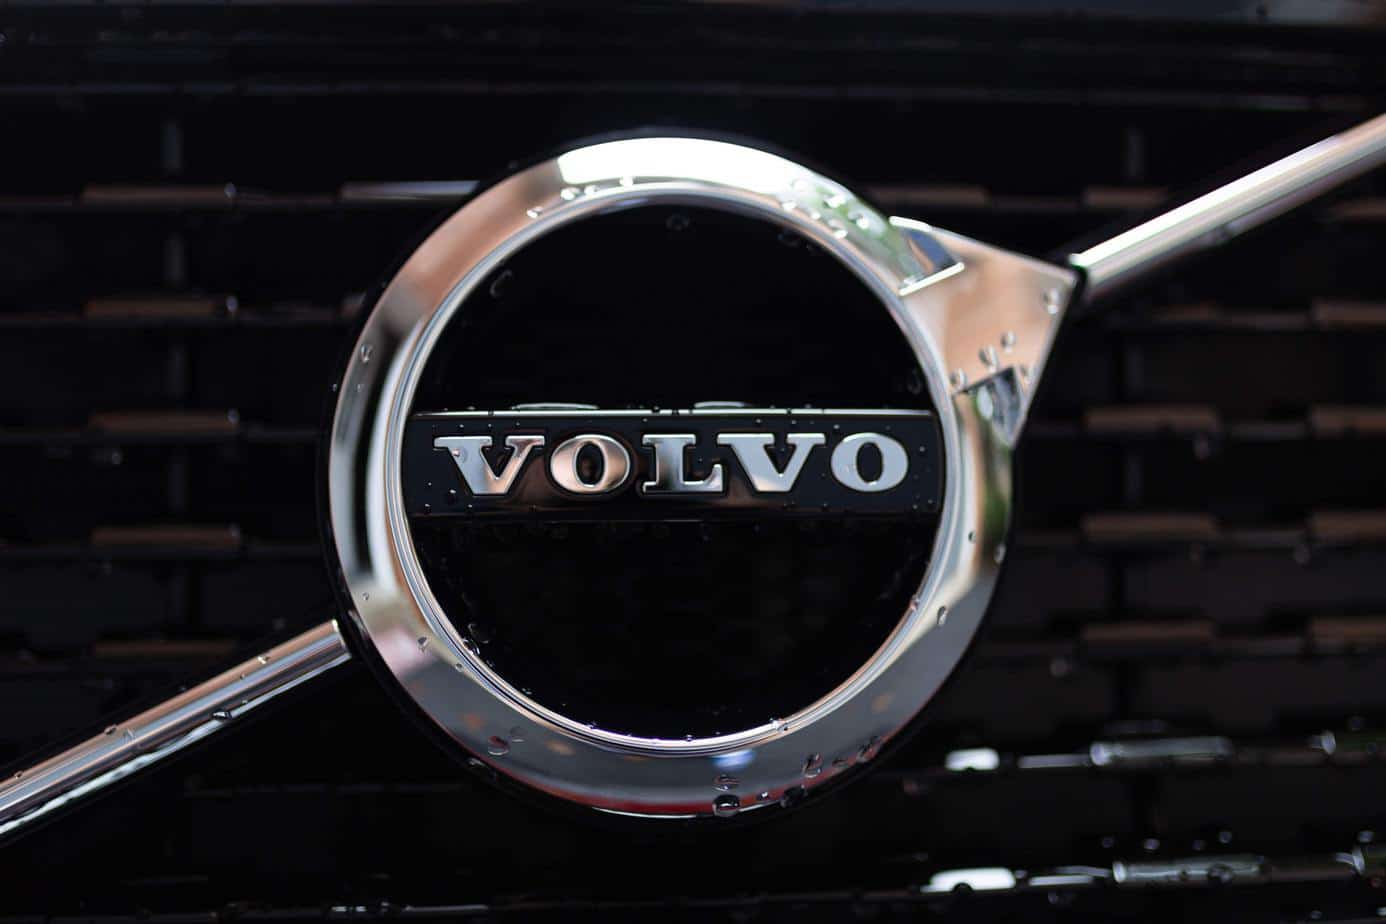 Czy Volvo pozytywnie wpłynęło na bezpieczeństwo w podróży z dziećmi?